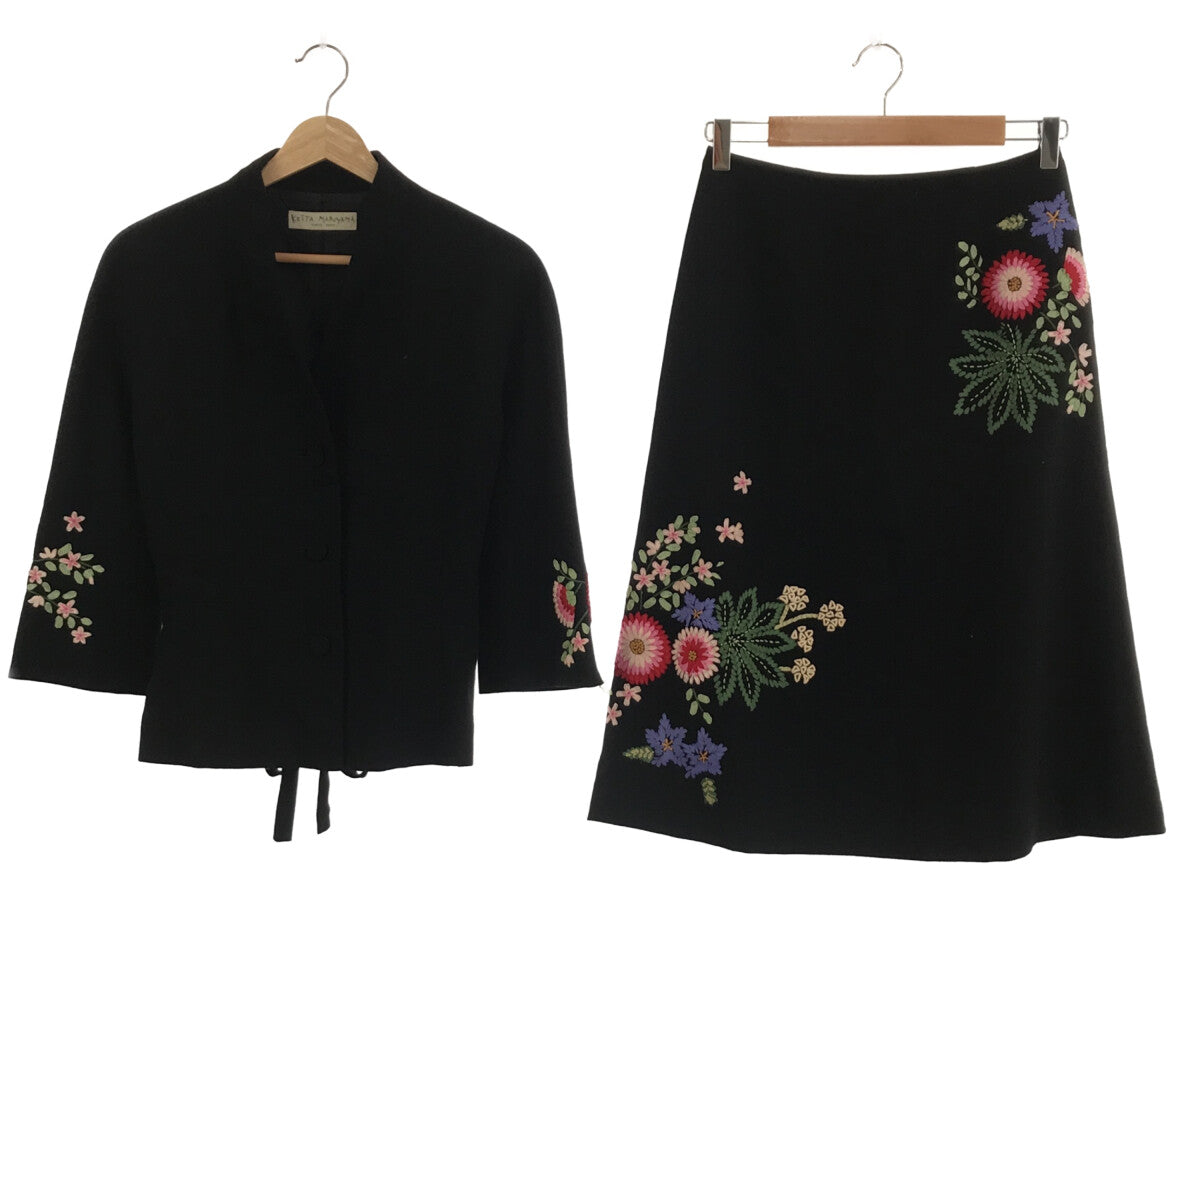 KEITA MARUYAMA / ケイタマルヤマ | セットアップ フラワー刺繍 ノーカラージャケット スカート | 1 |